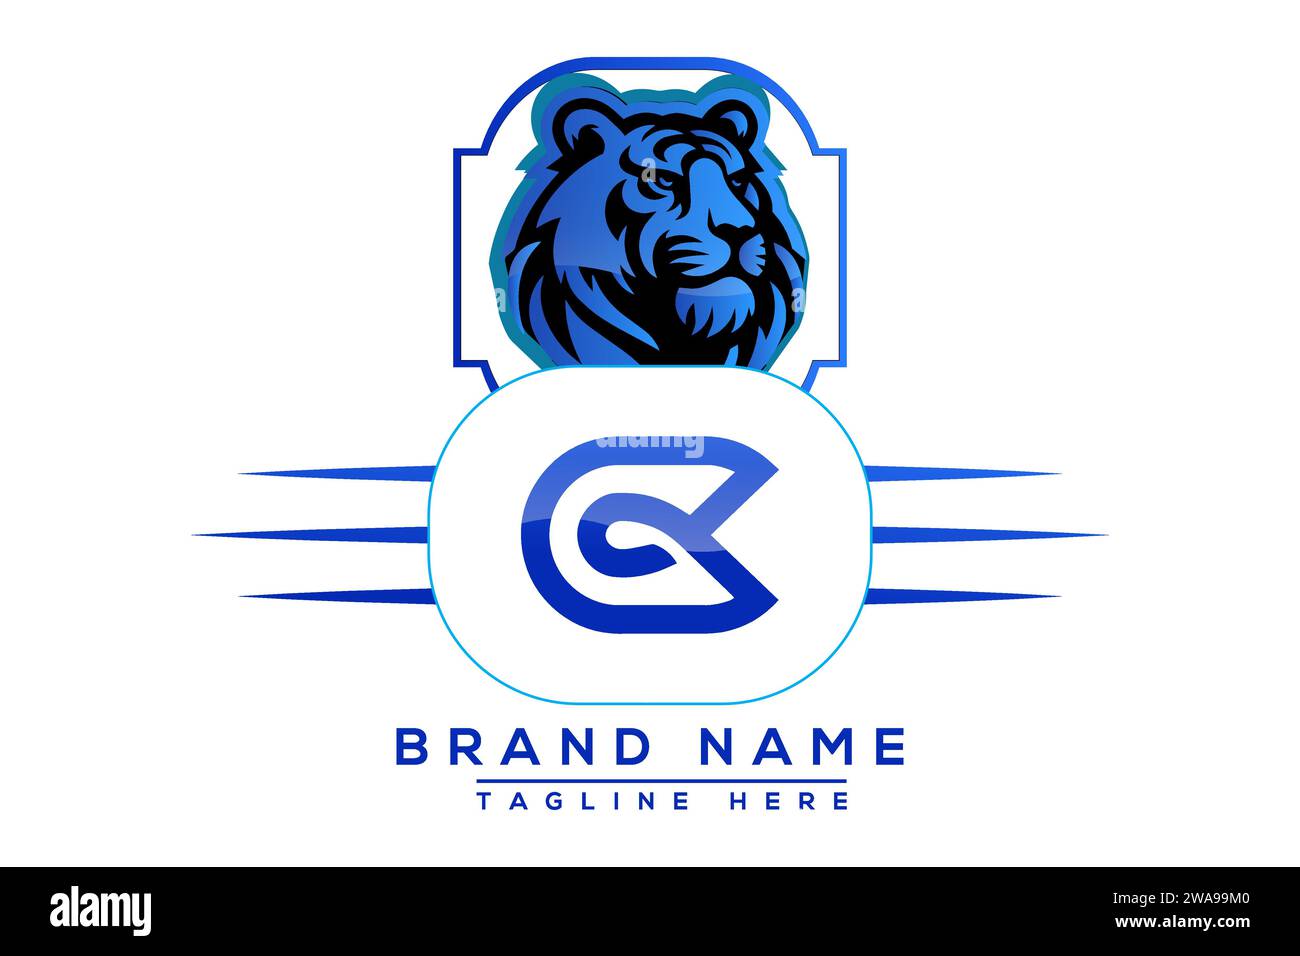 CG Tiger logo Blue Design. Vector logo design for business. Stock Vector